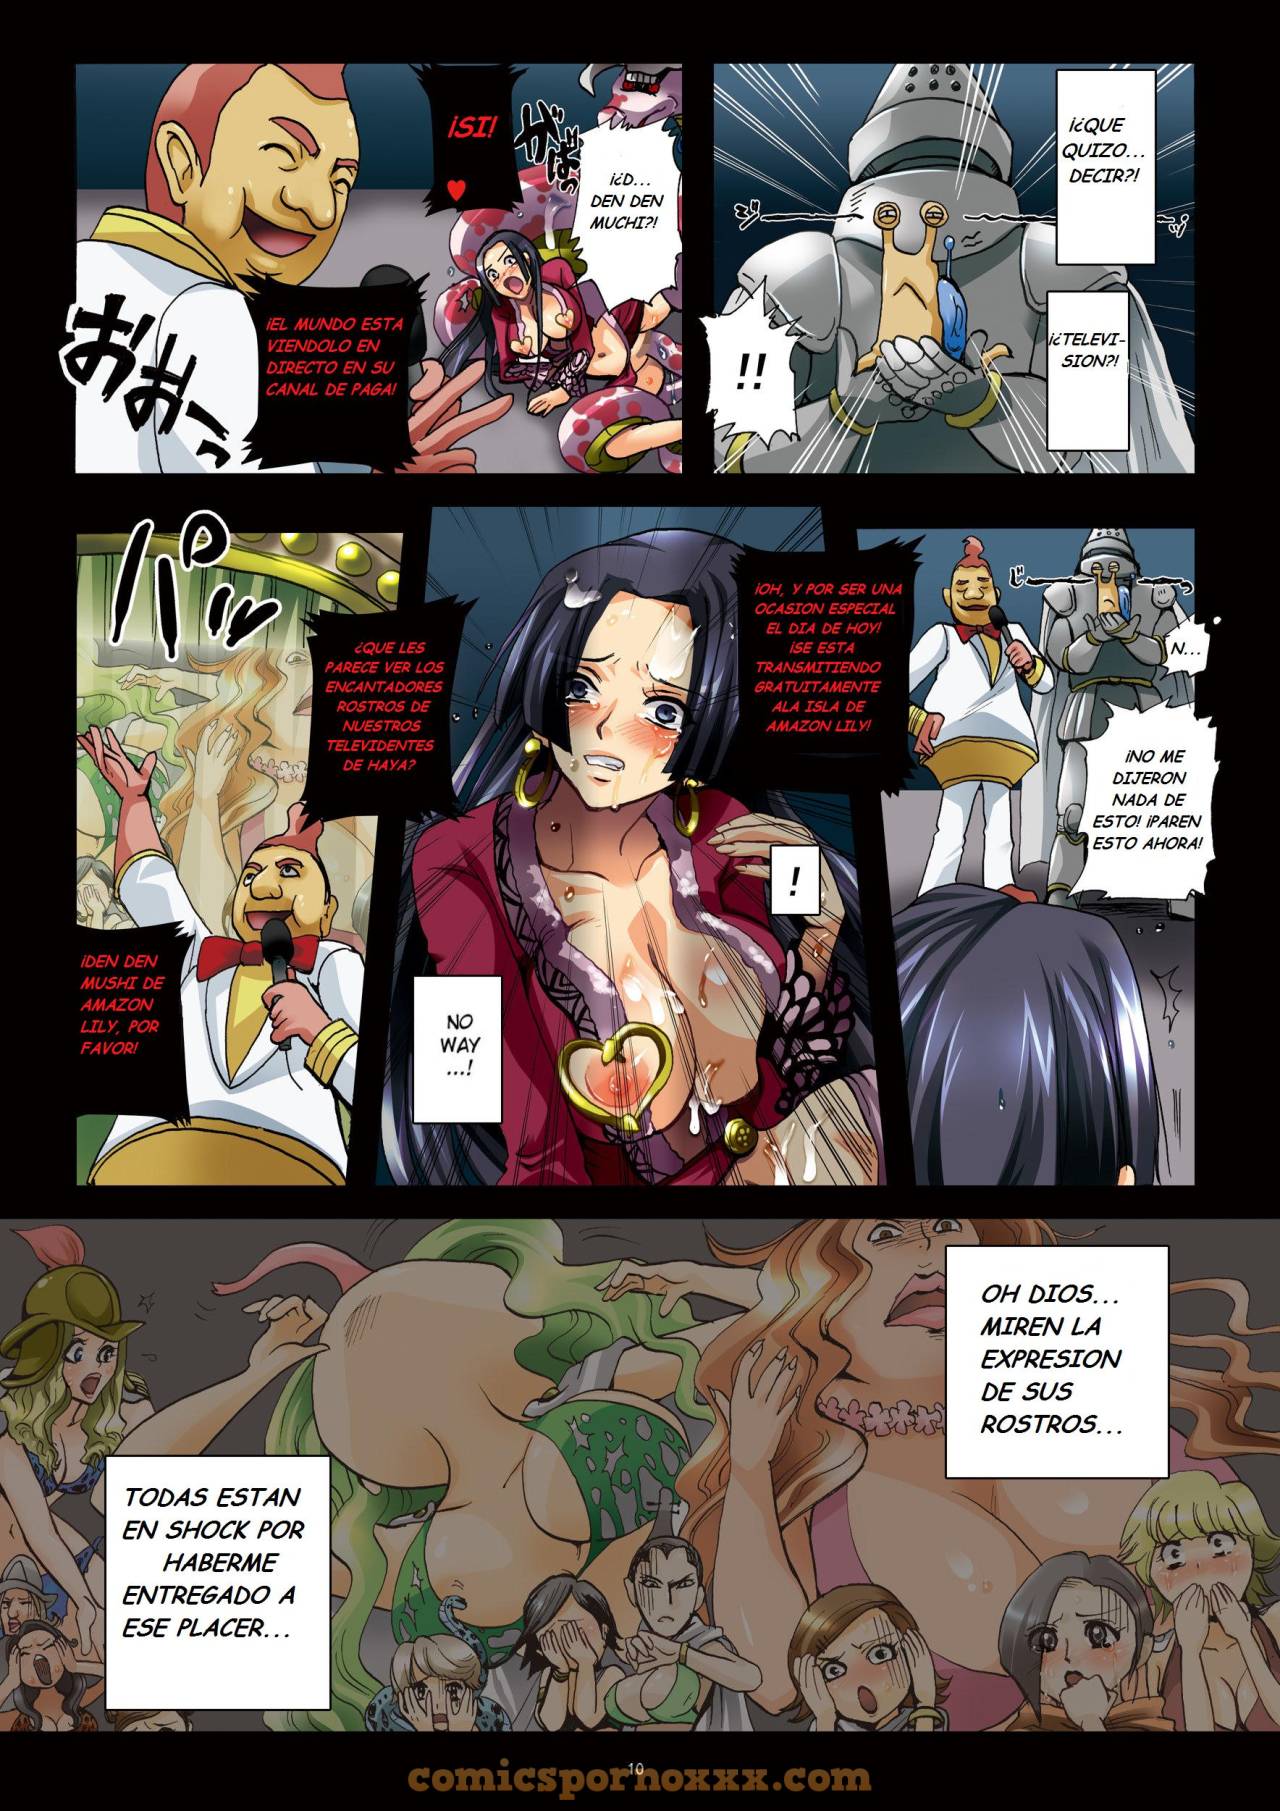 Slave Empress Snake Rape Strip Show - 10 - Comics Porno - Hentai Manga - Cartoon XXX